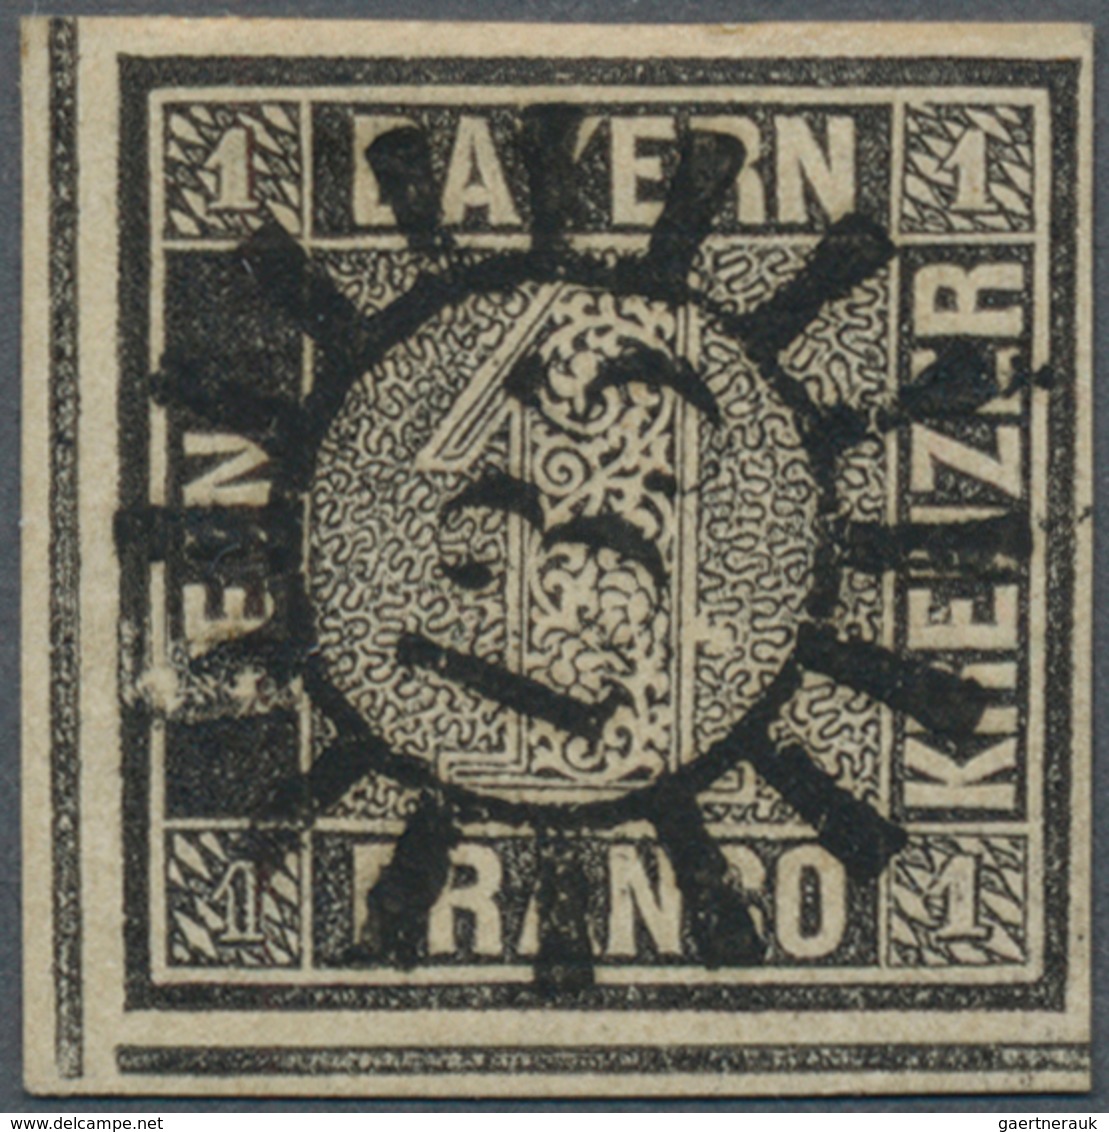 Bayern - Marken Und Briefe: 1849, 1 Kreuzer Schwarz, Platte 2, Farbfrisches Exemplar In Tadelloser E - Autres & Non Classés